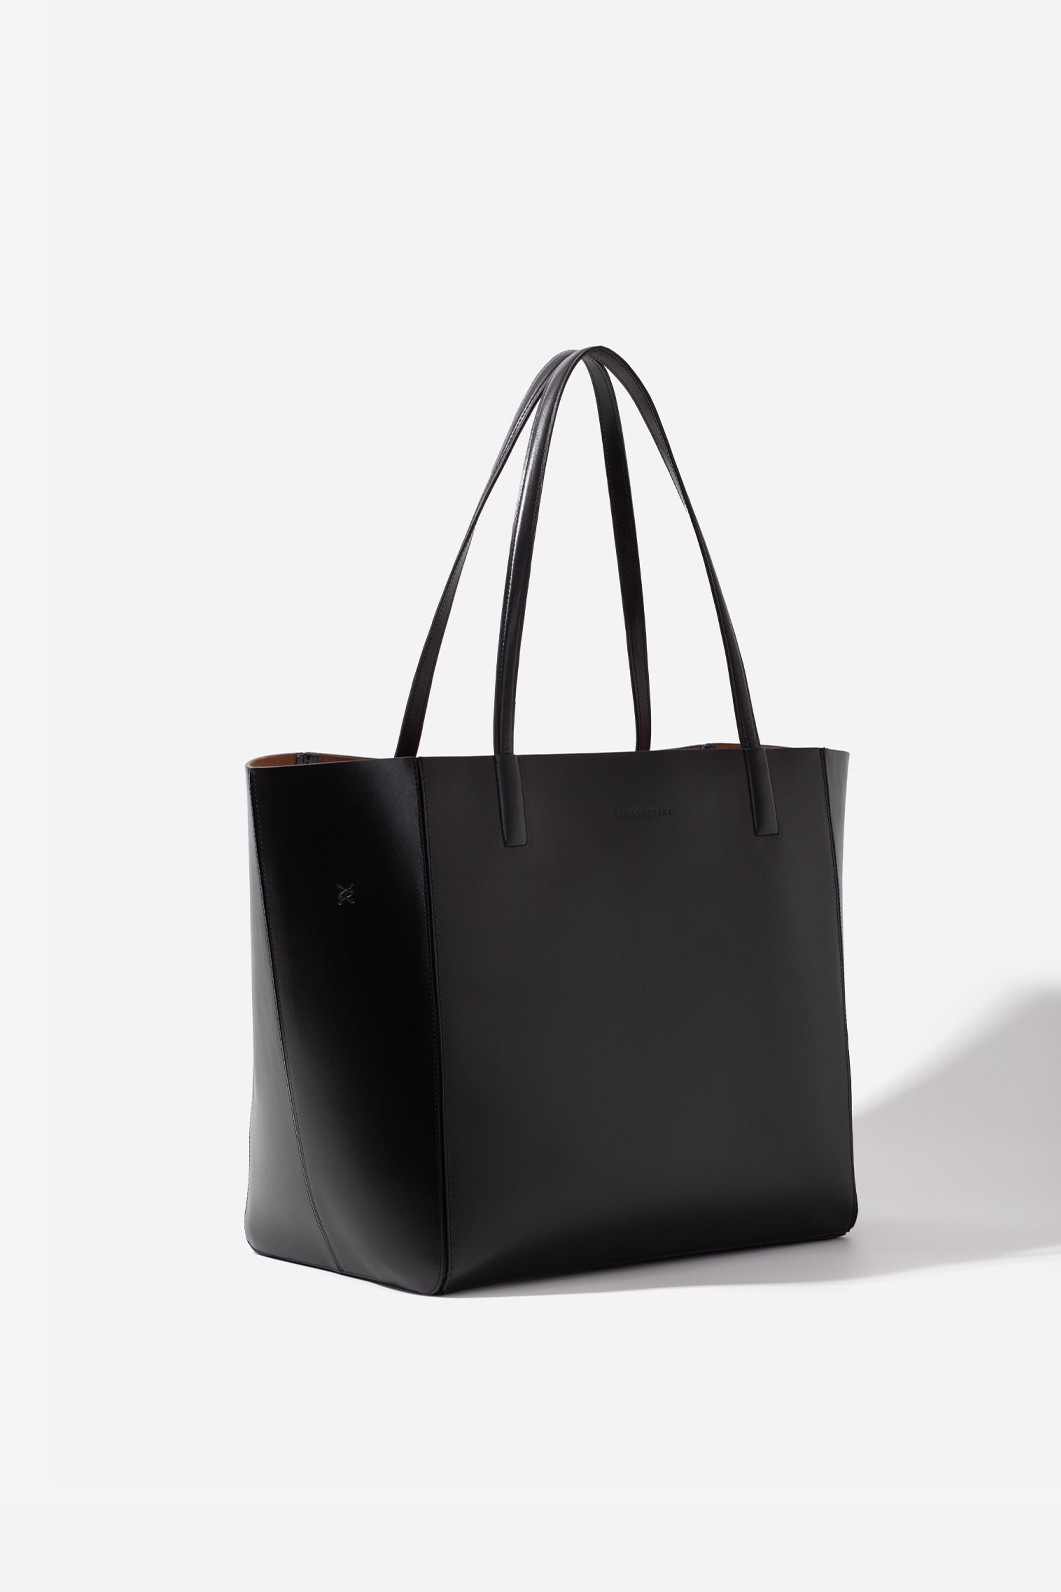 SARAH black shopper bag